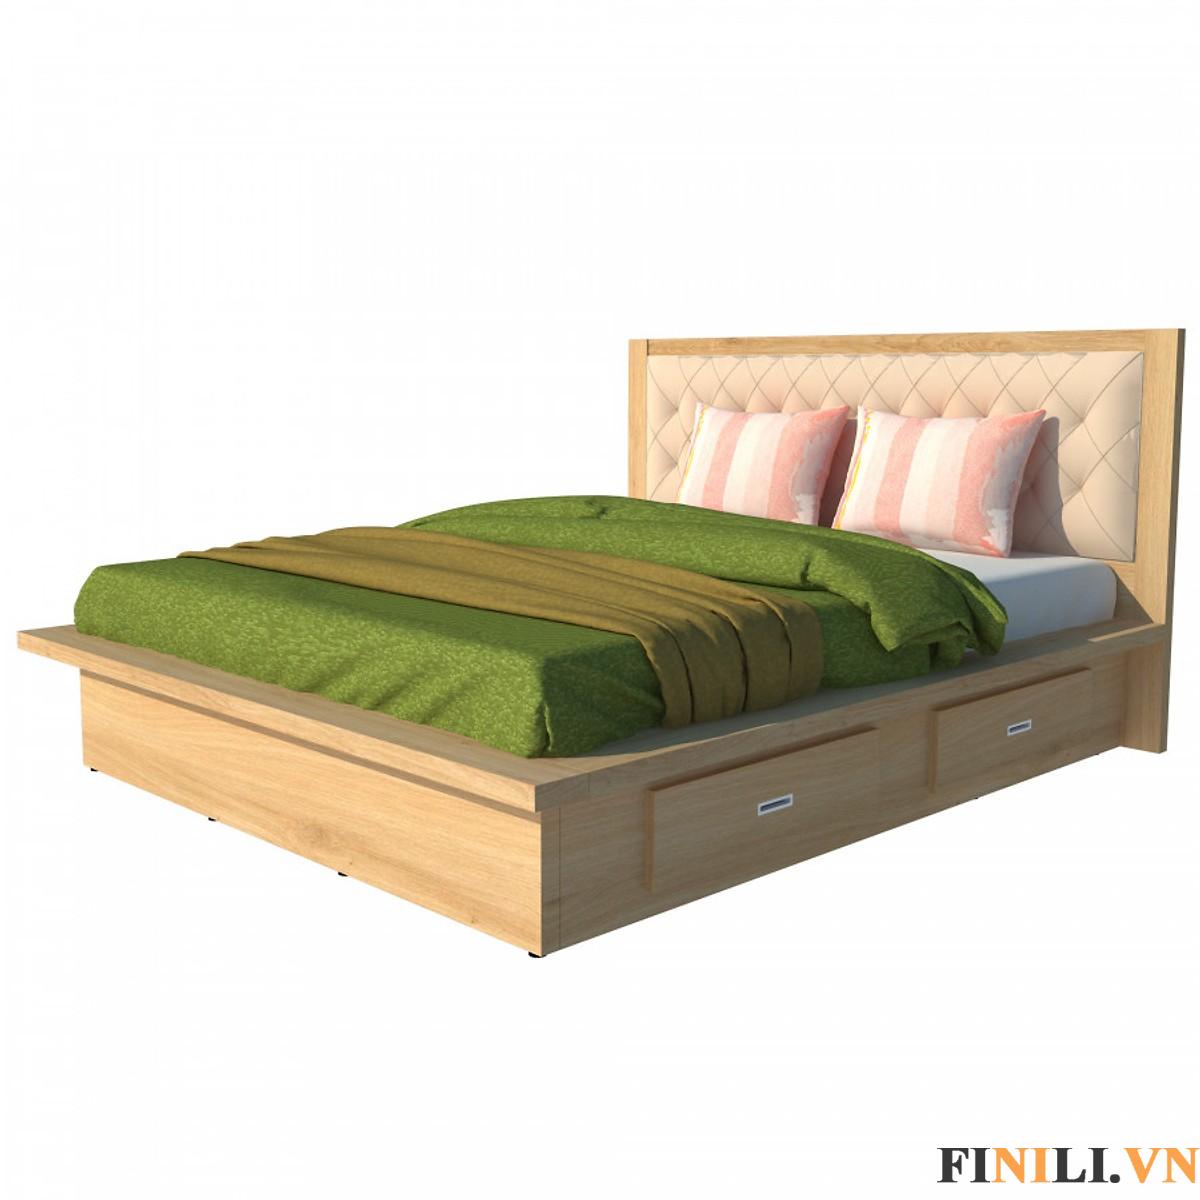 Thiết kế giường làm từ gỗ công nghiệp MDF, màu sắc nhã nhặn, ấn tượng